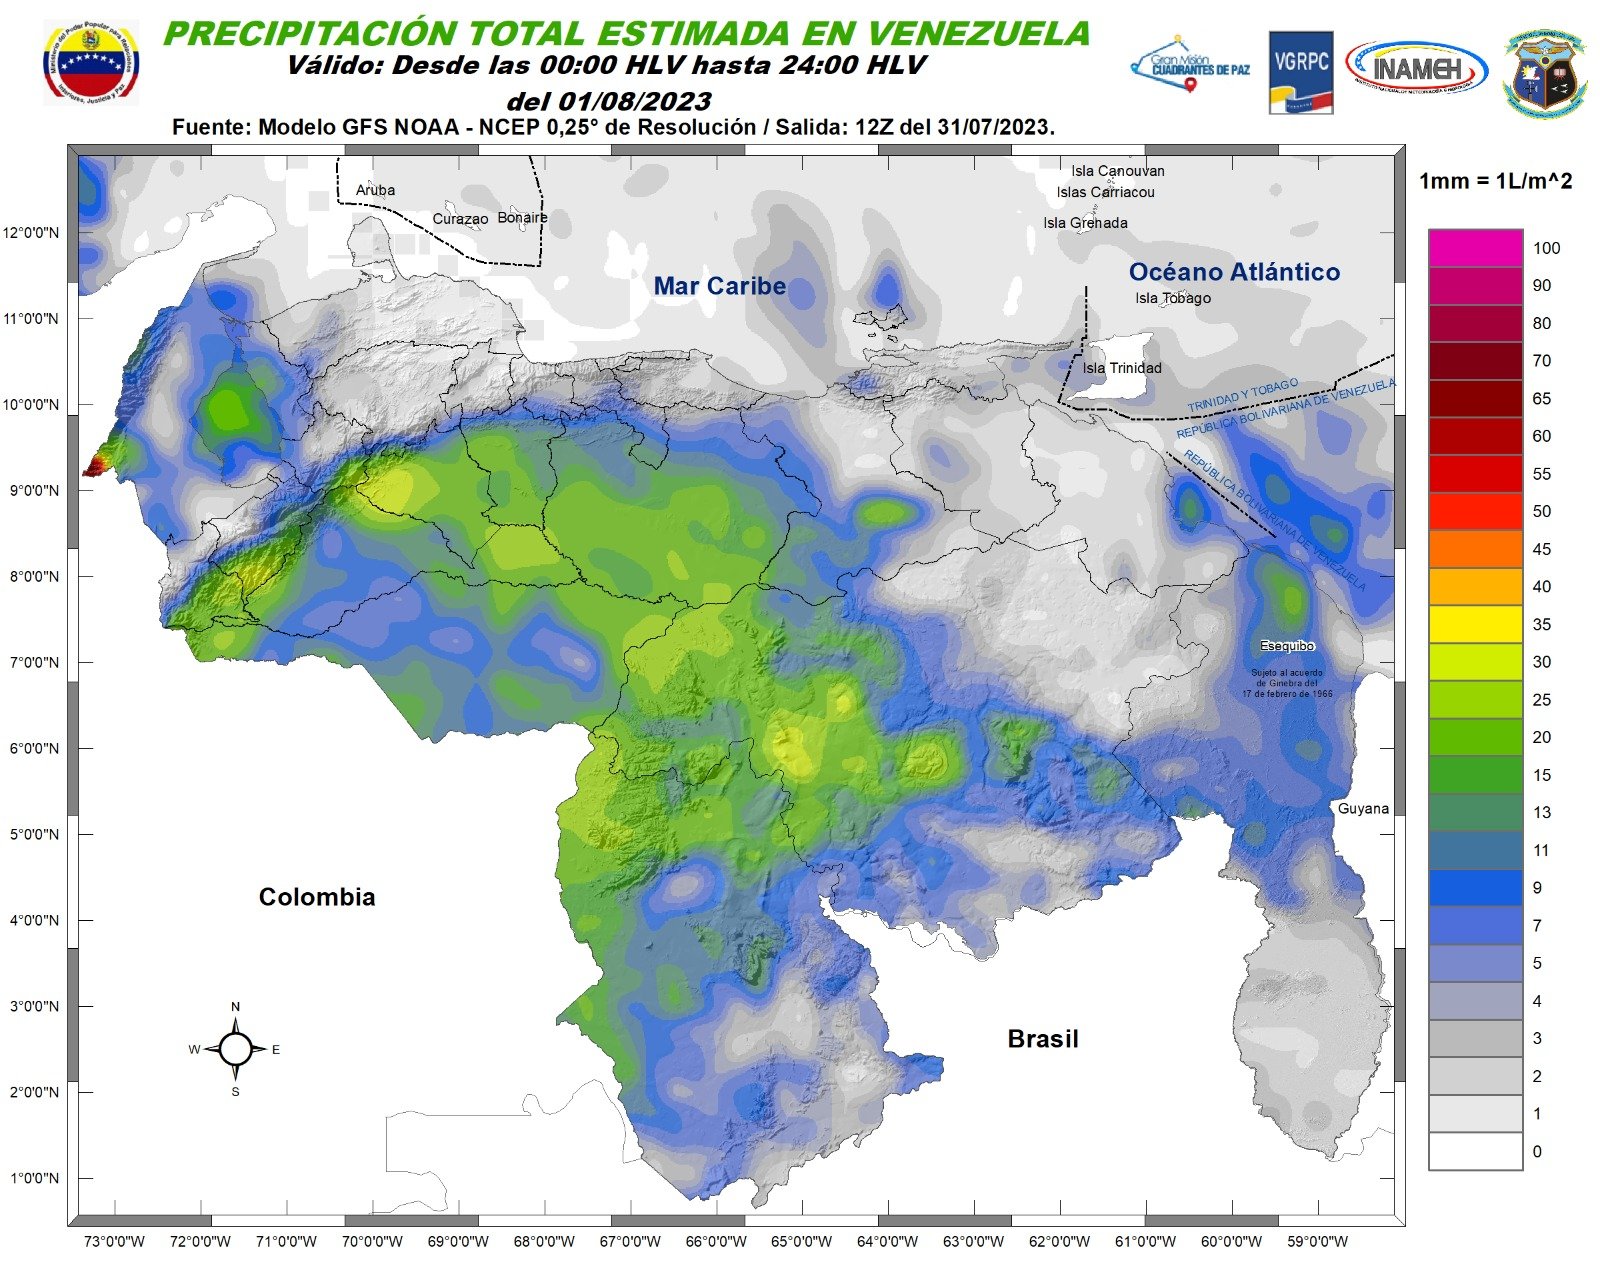 Inameh prevé nubosidad y lluvias en varios estados de Venezuela este #1Ago